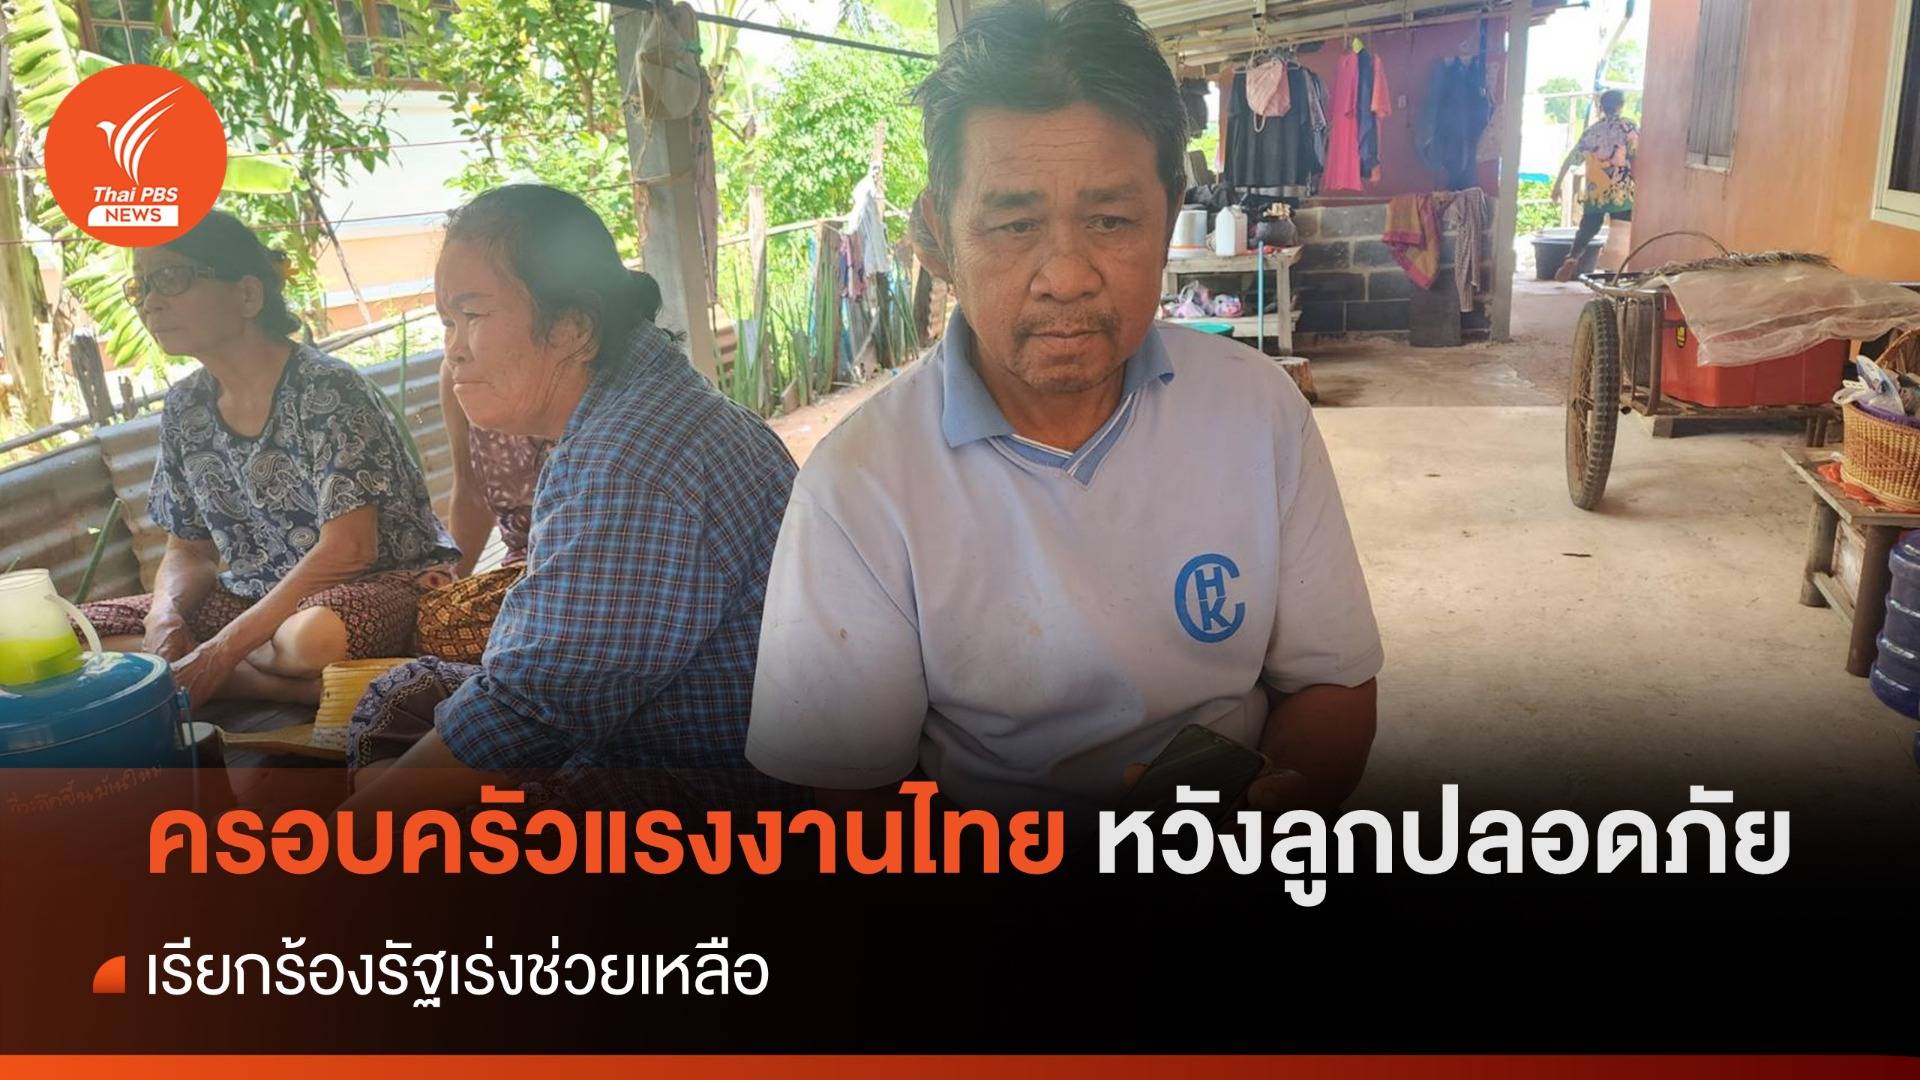 ครอบครัวแรงงานไทยยังหวังลูกปลอดภัย เรียกร้องรัฐเร่งช่วย